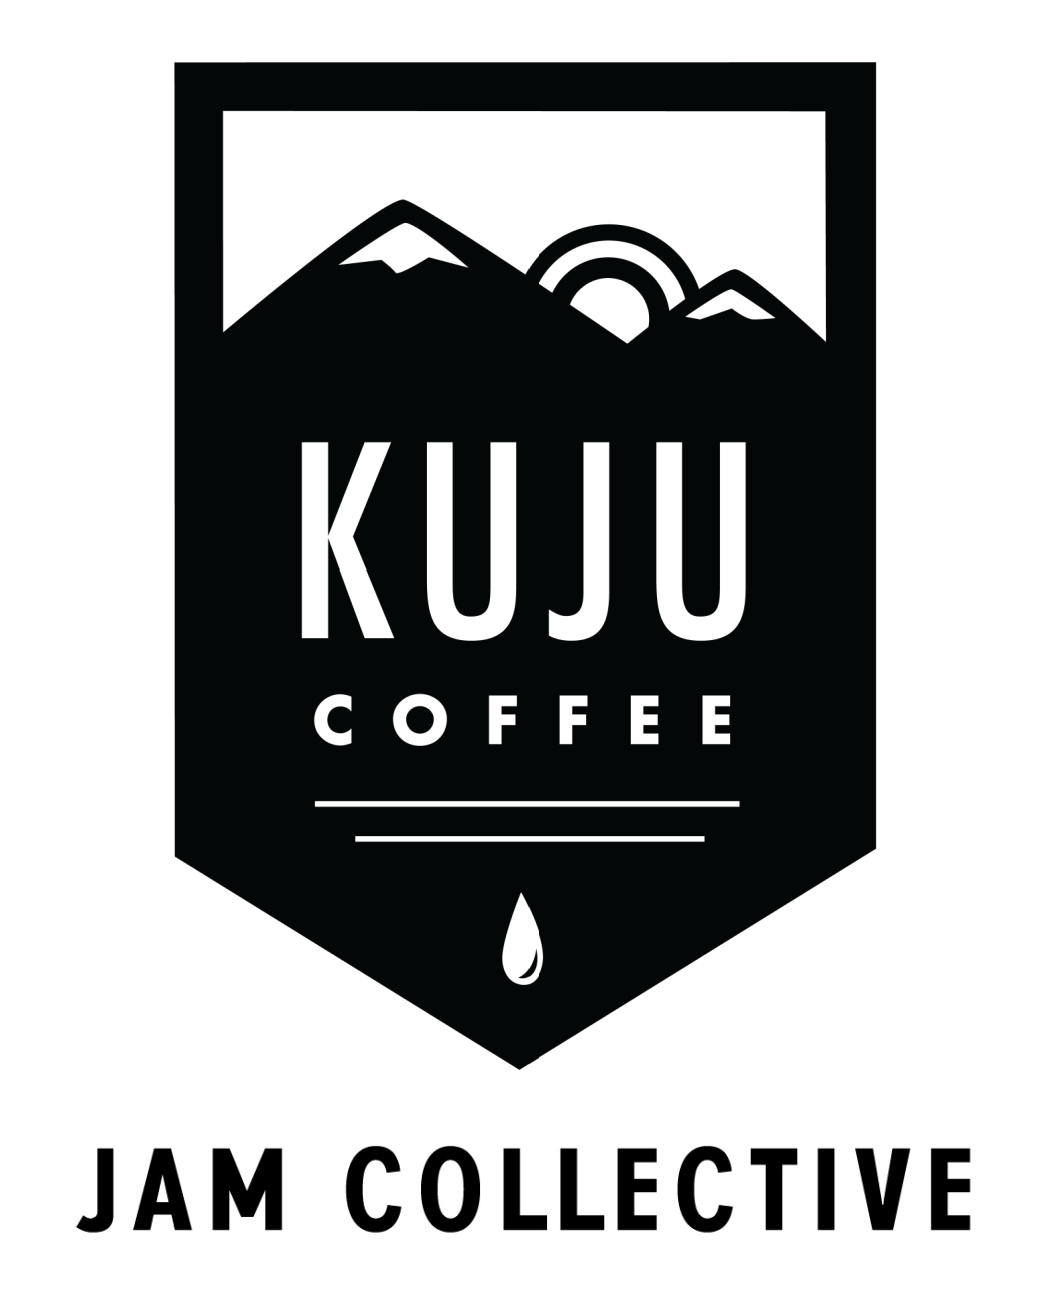 Kuju Coffee